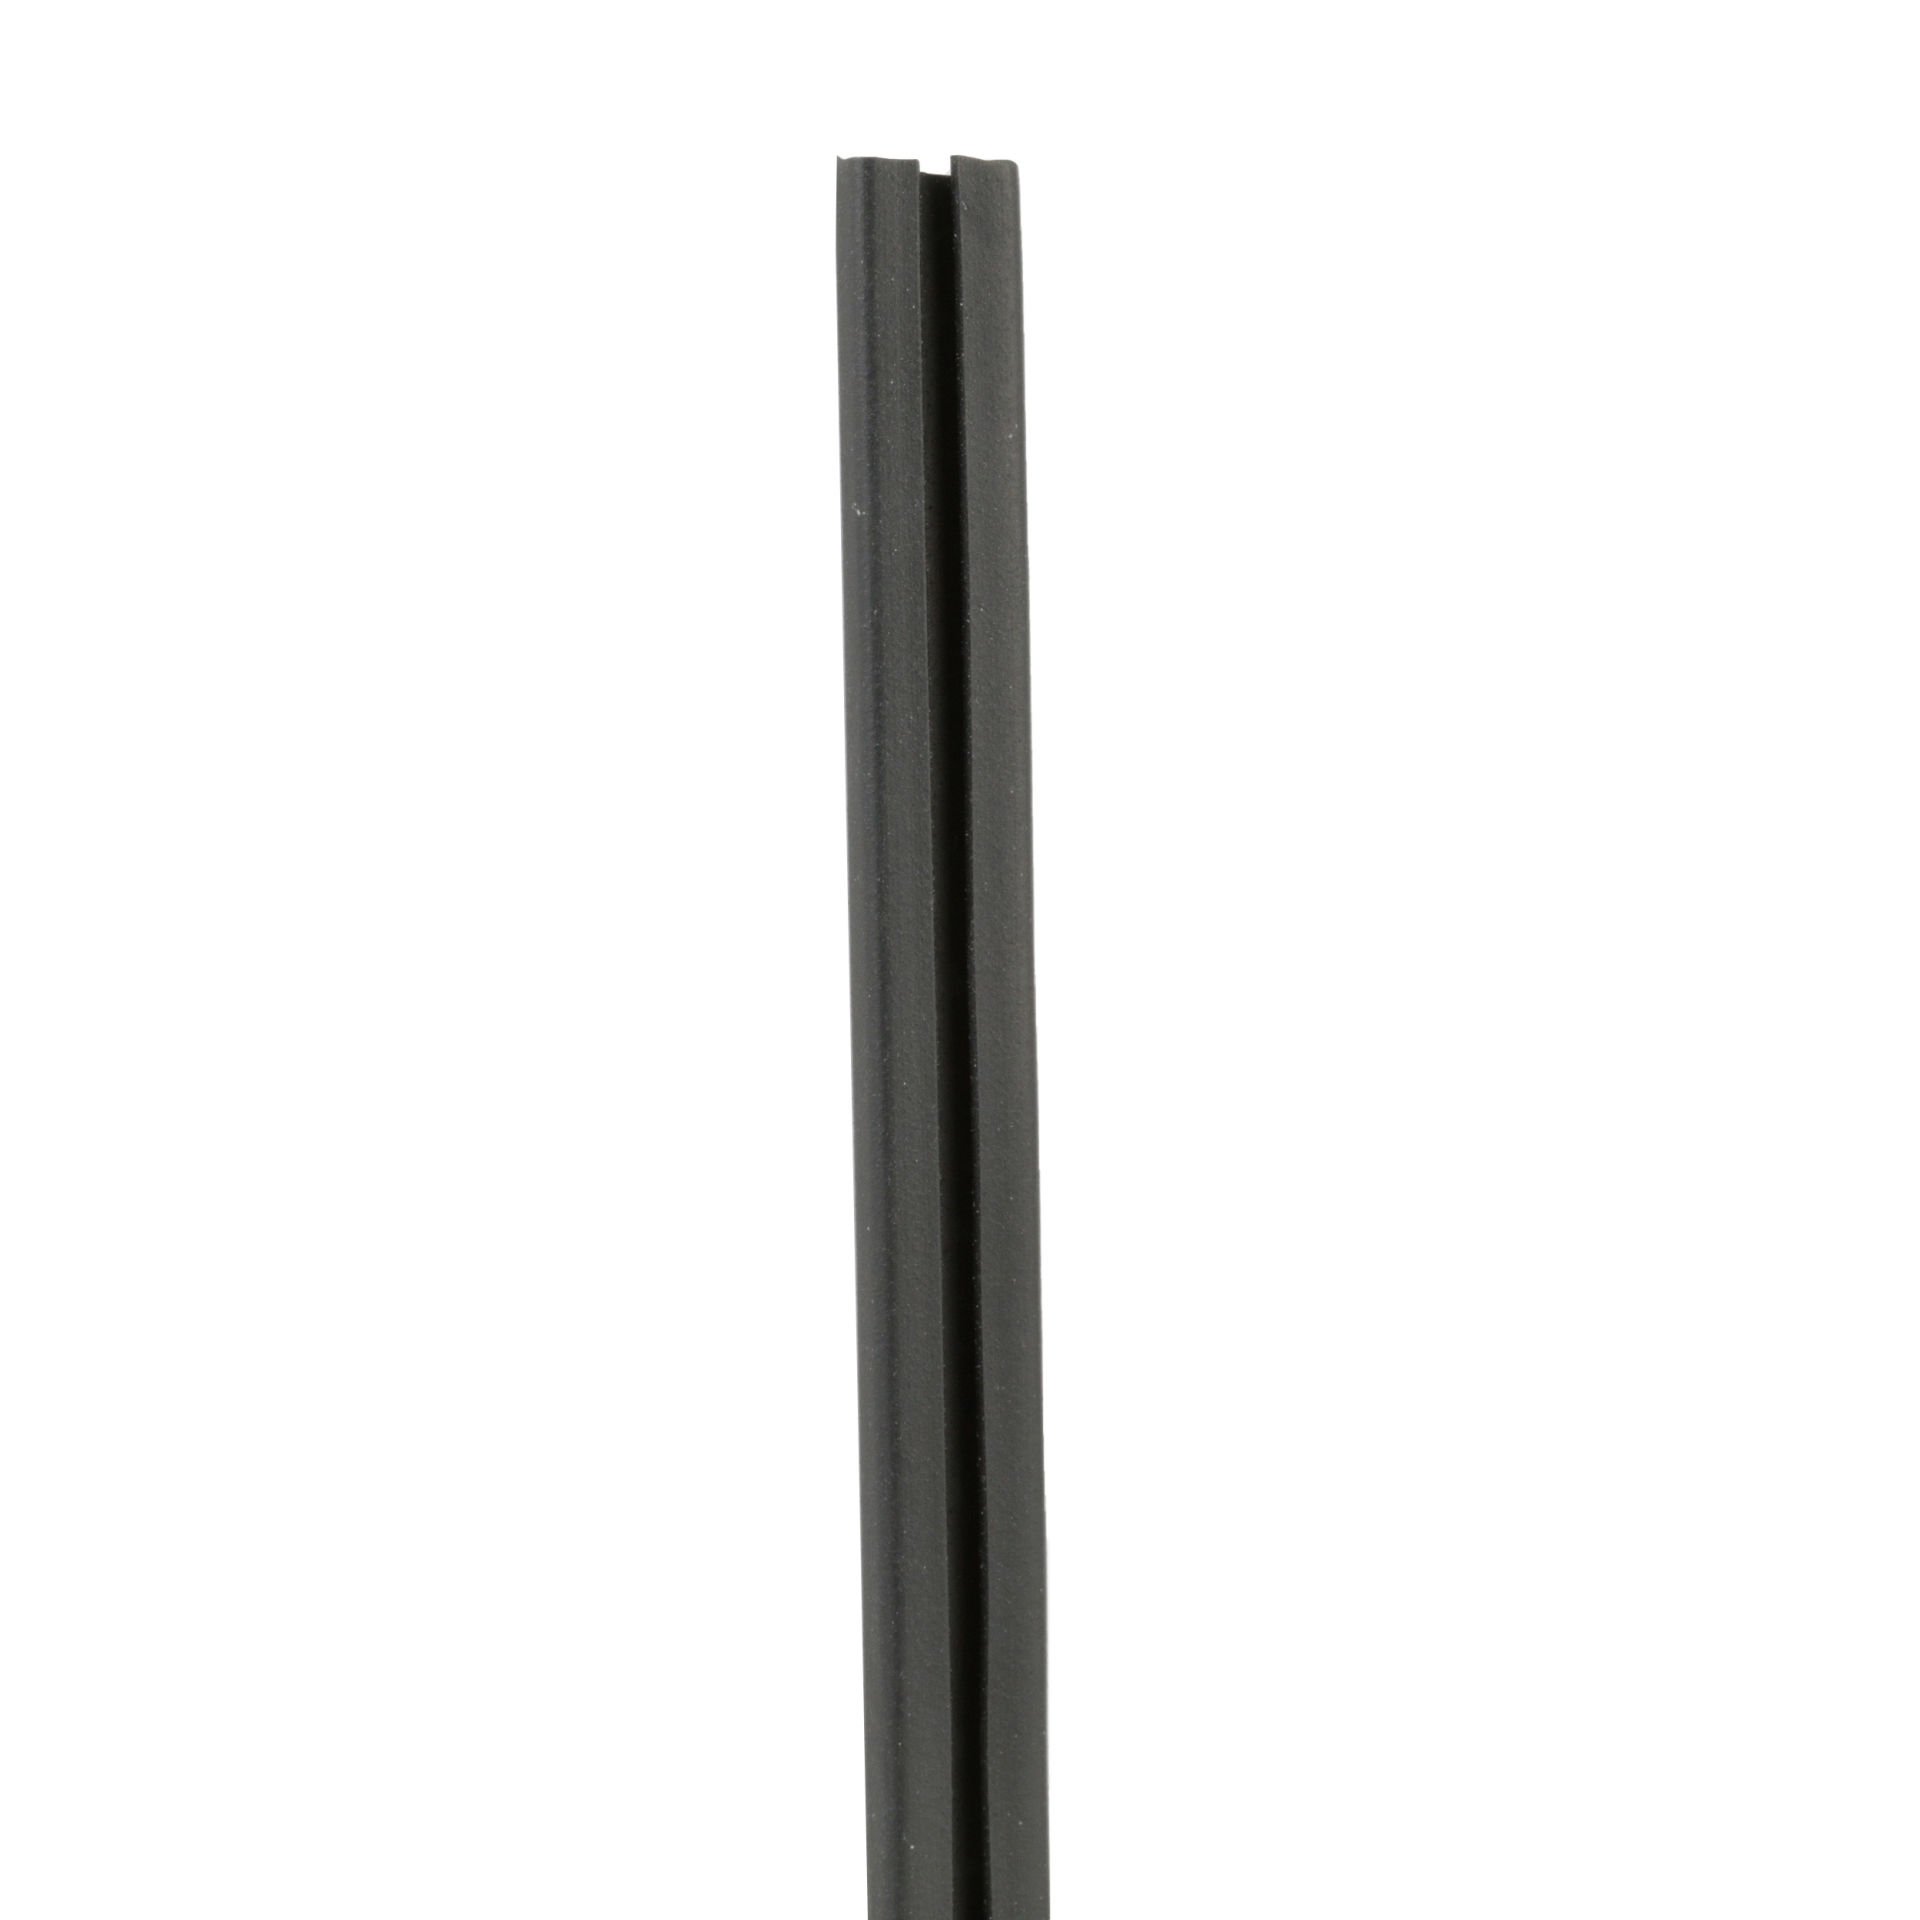 yastık kılıfı standart kesit bağları, özel bir uzunlukta bant sistemi, ya da ''C'' şeklinde bir kanal tasarımı çemberleme bir yumuşak çelik ile kullanım içindir. sleeving Siyah ve Neopren olduğunu. uzunluğunda 0,33'' (8.4mm) genişliğinde ve 100' (30.5m), 